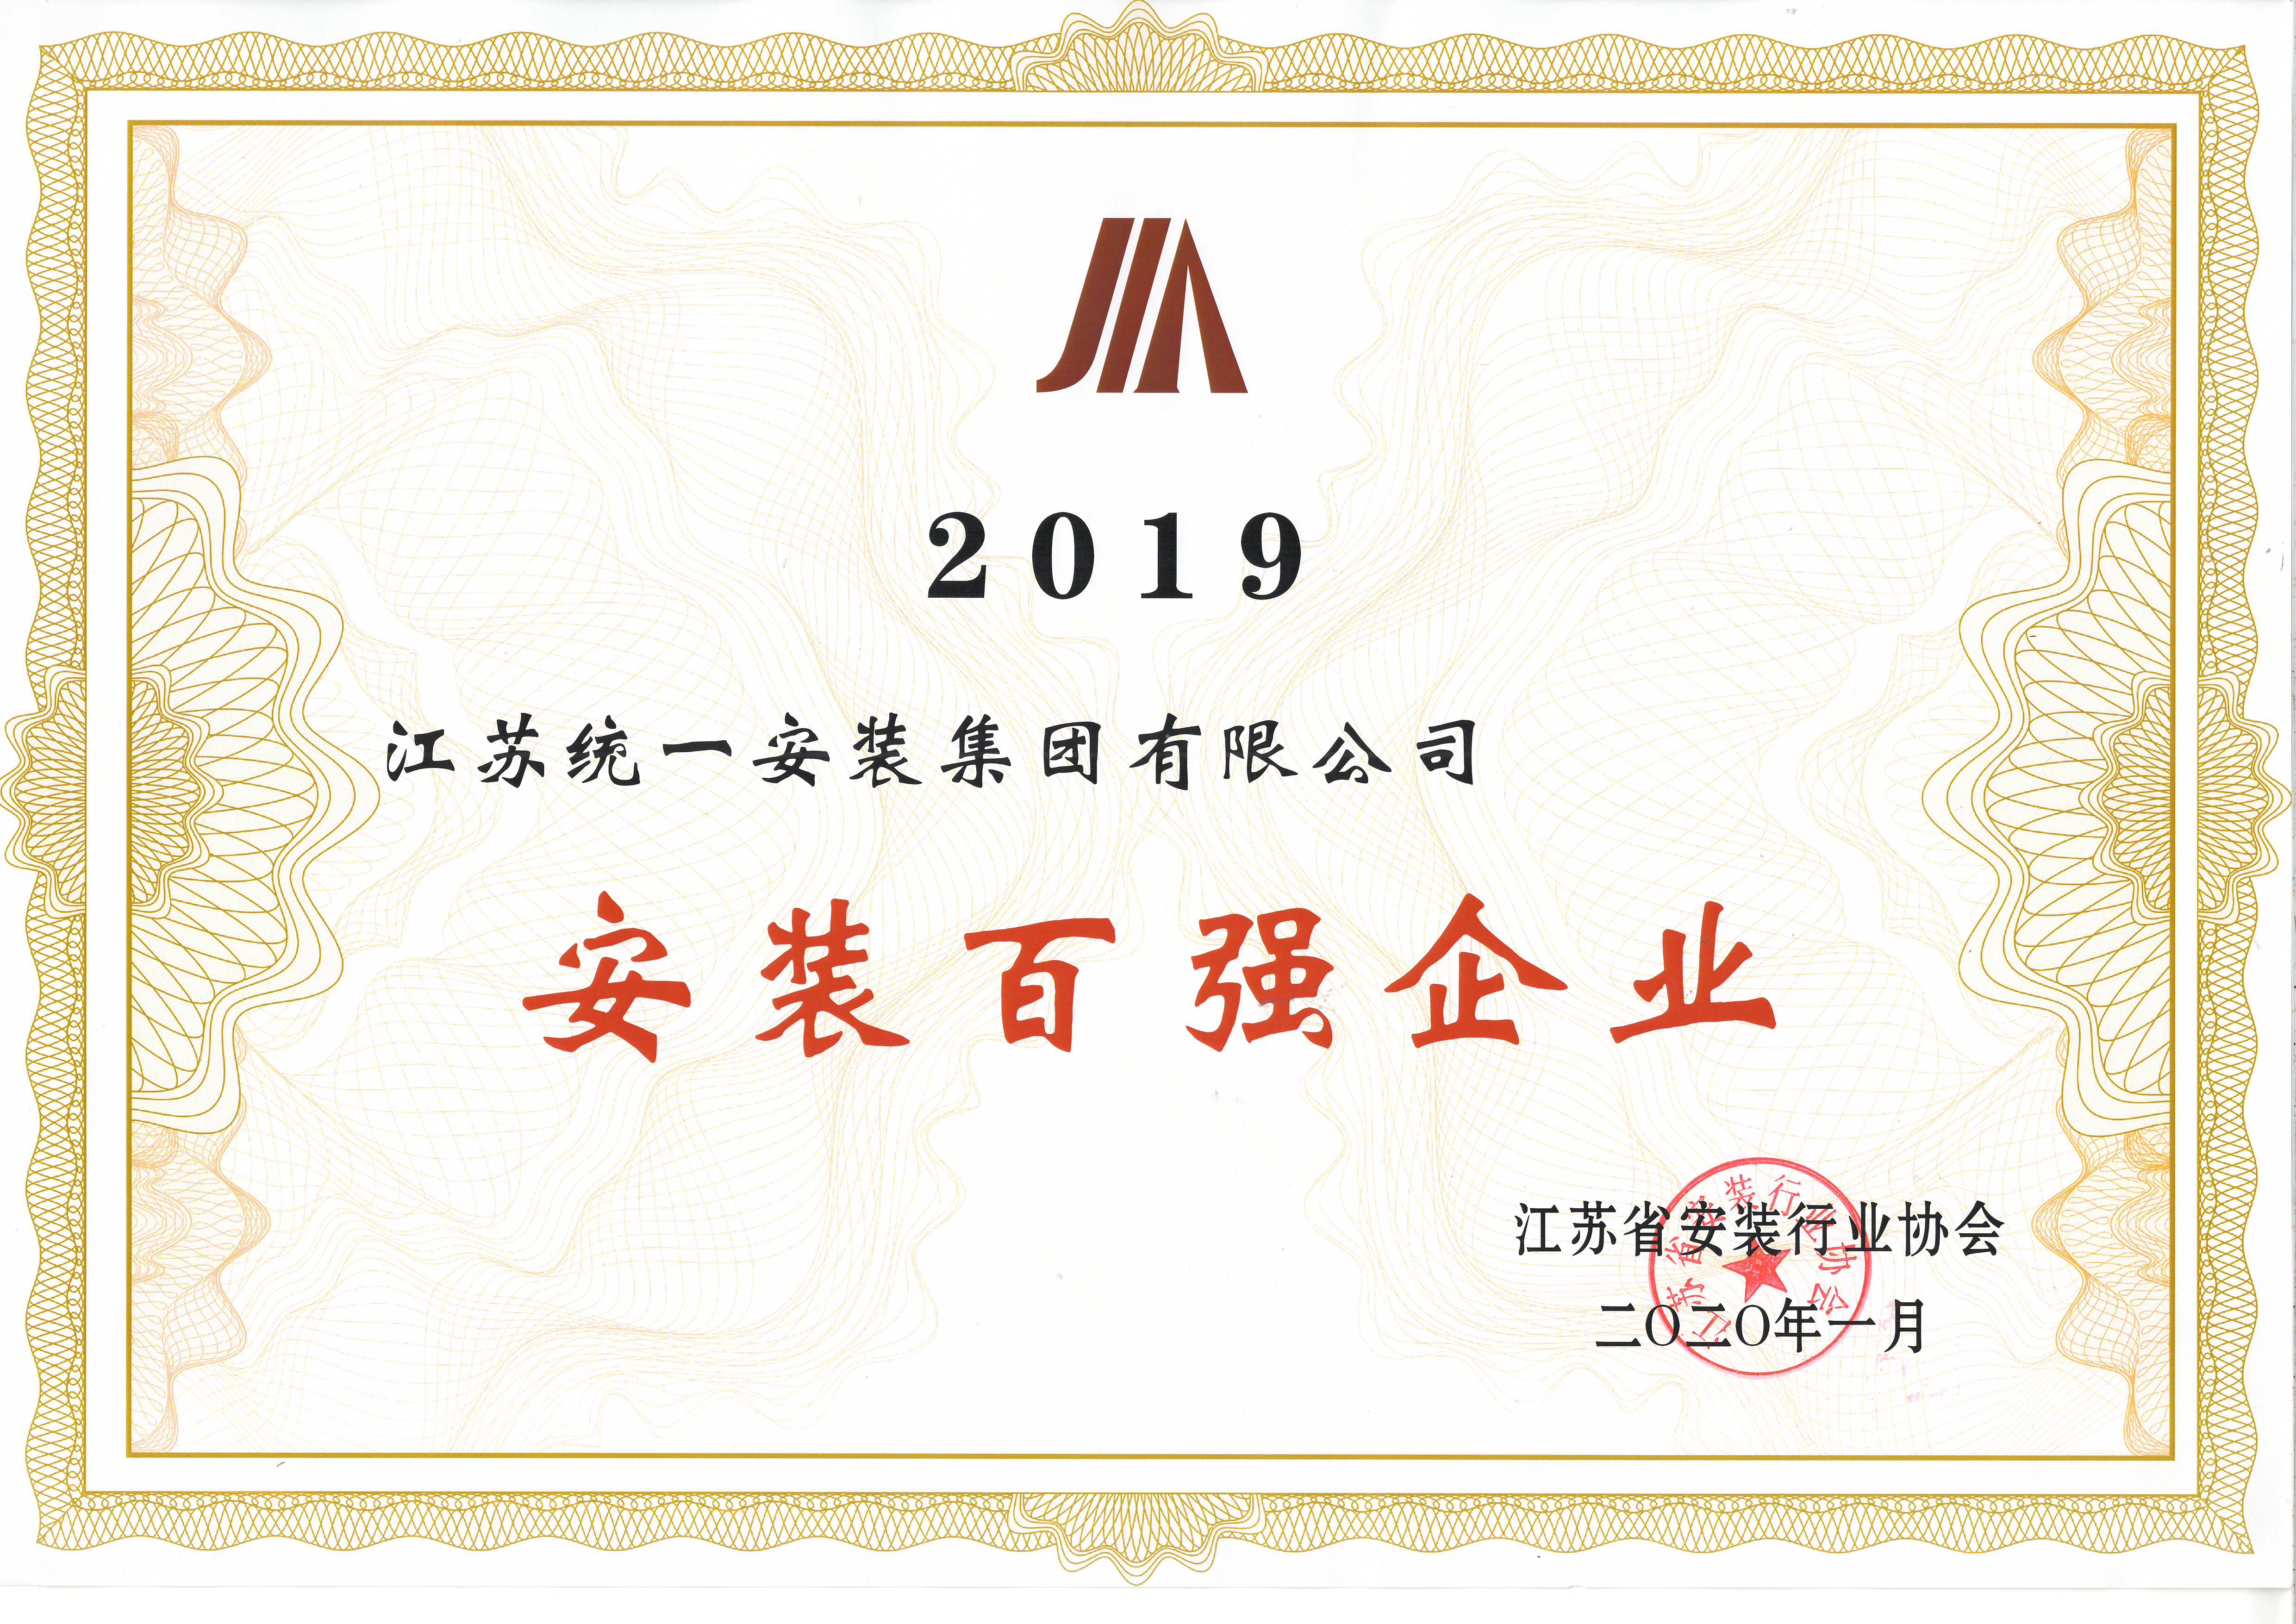 江苏统一安装集团荣获2019年度江苏省安装行业百强称号